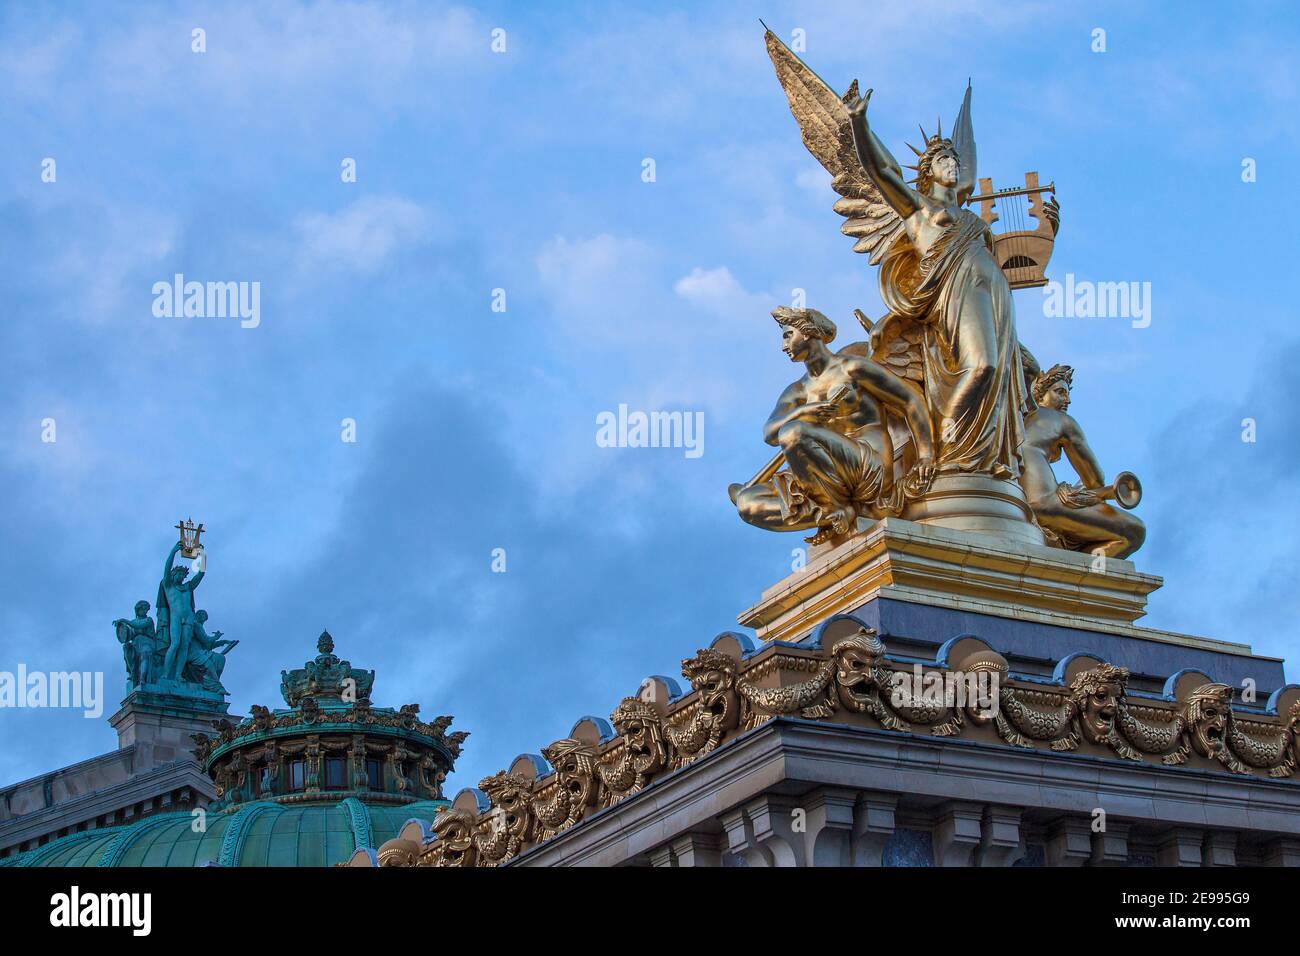 Statue sul tetto dell'Opera Garnier, Parigi, Francia Foto Stock